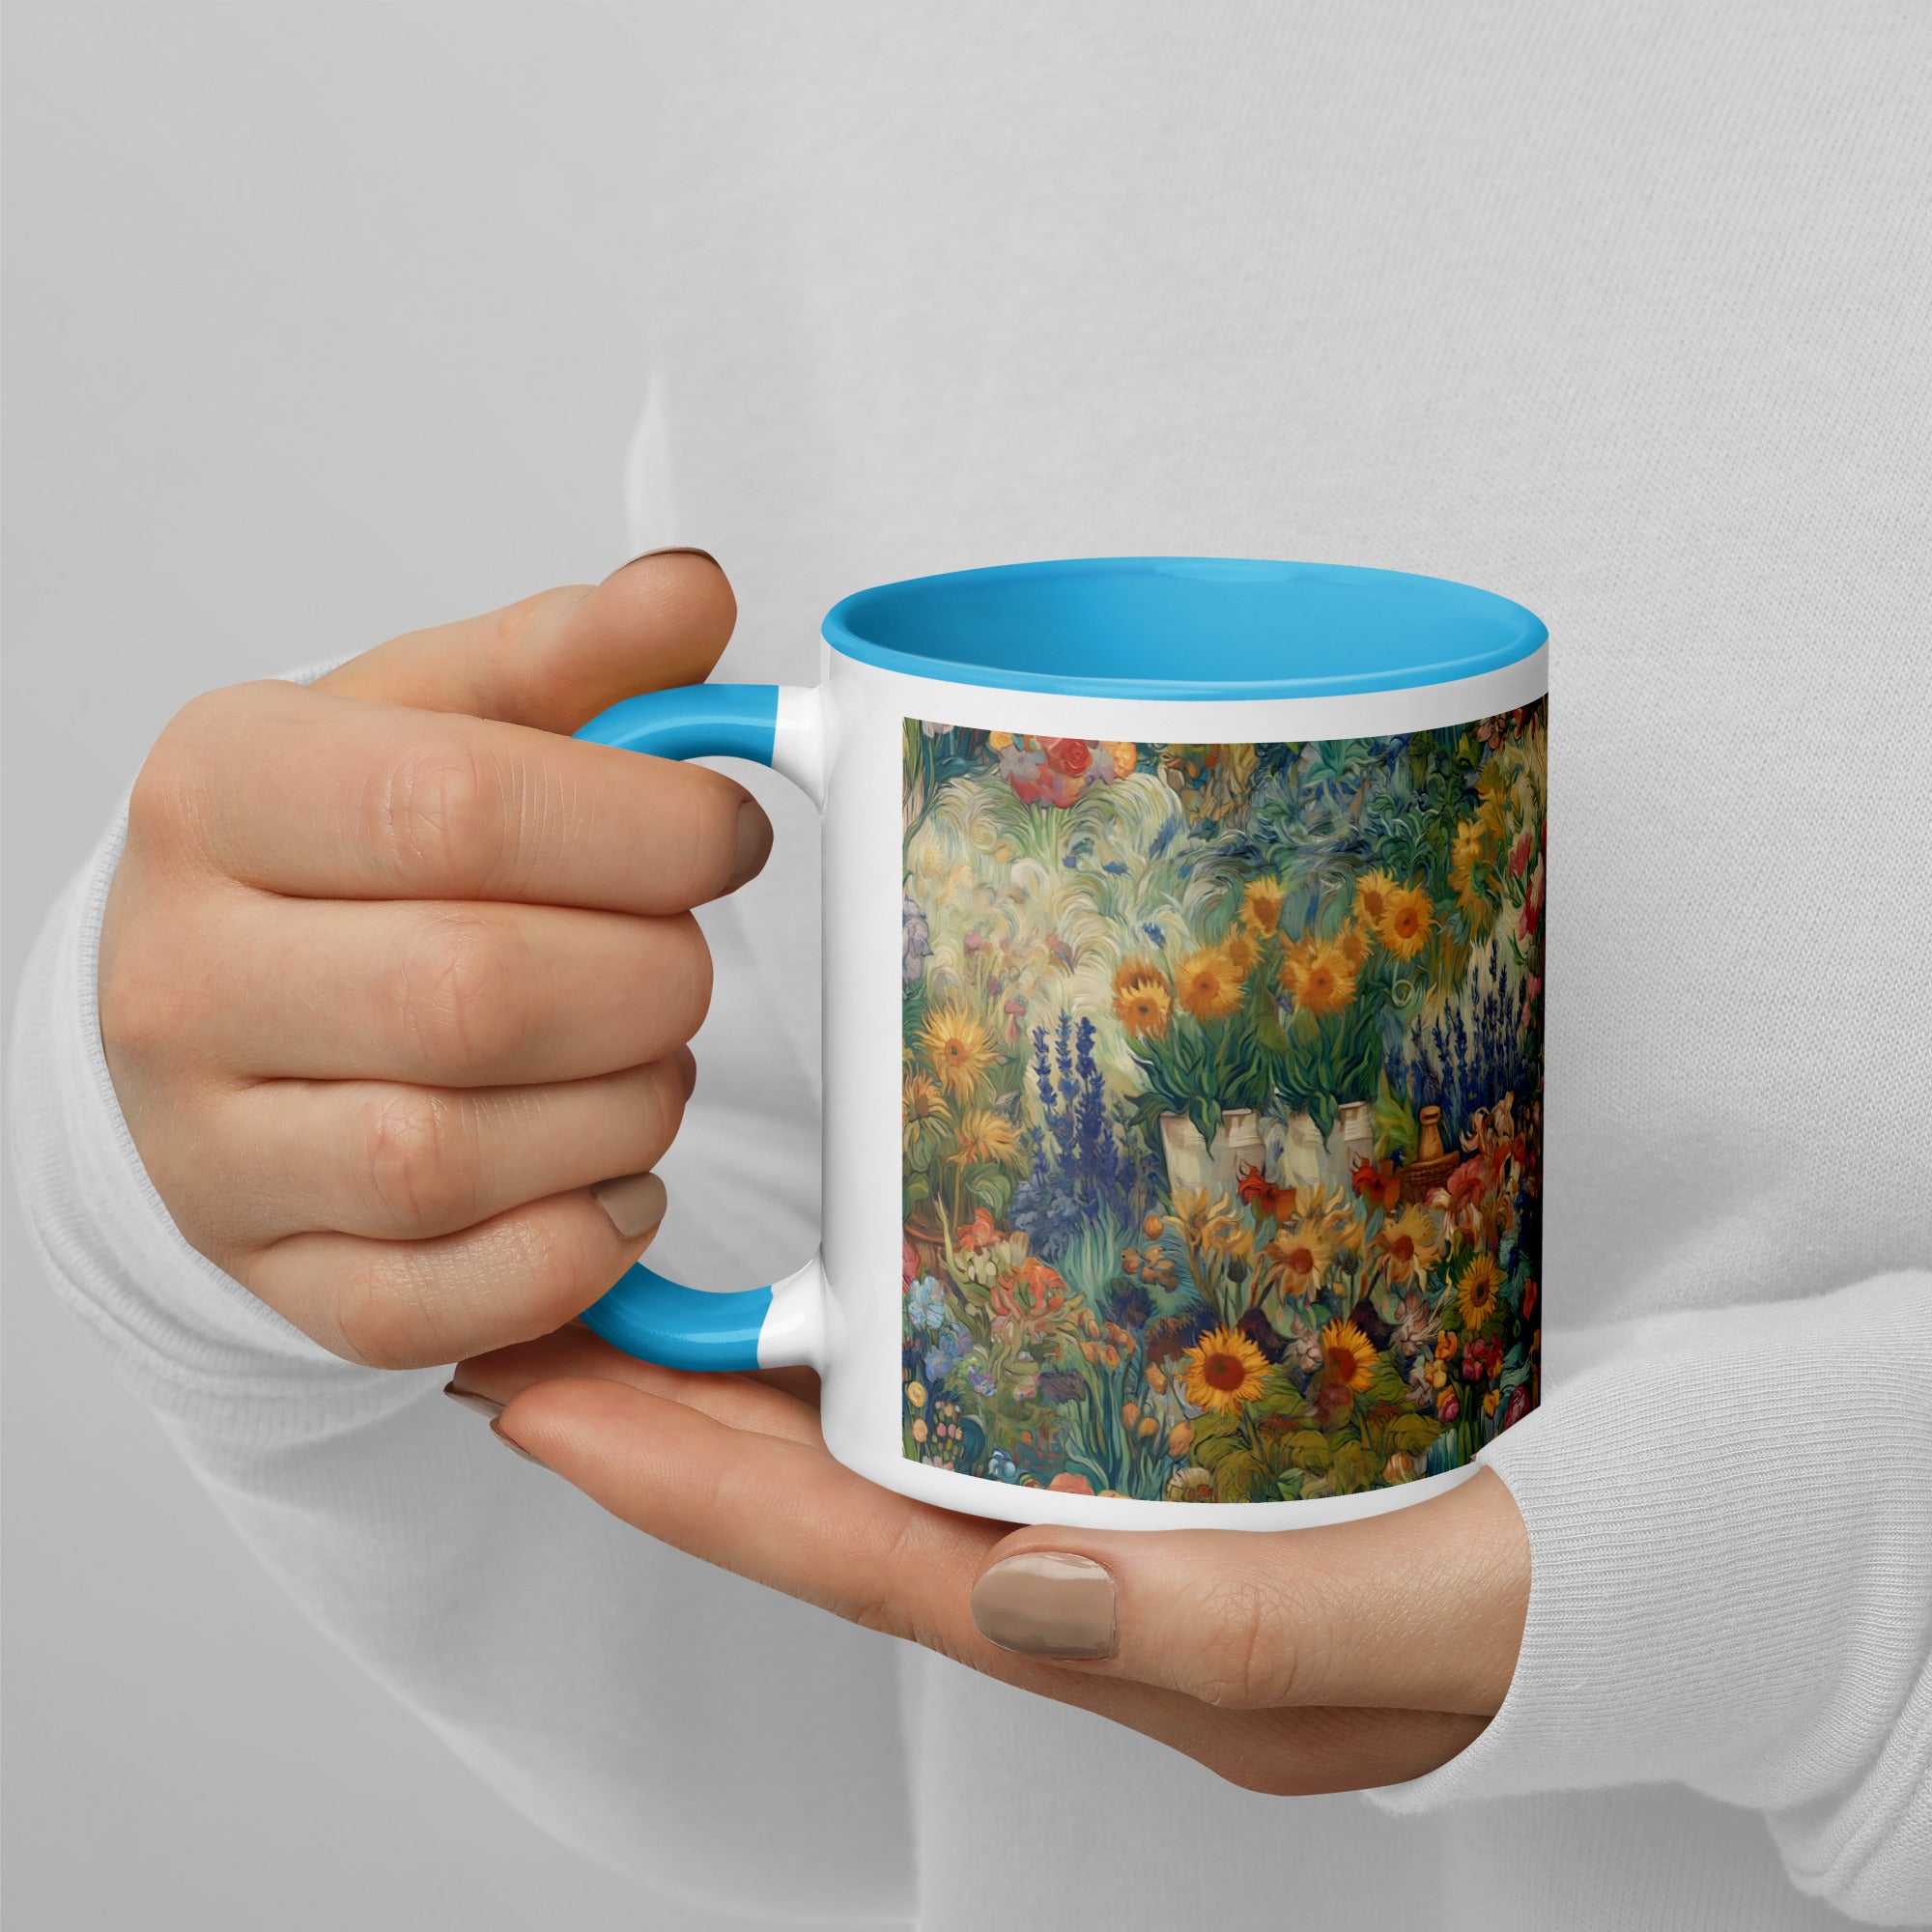 Vincent van Gogh 'Garden at Arles' Famous Painting Ceramic Mug | Premium Art Mug